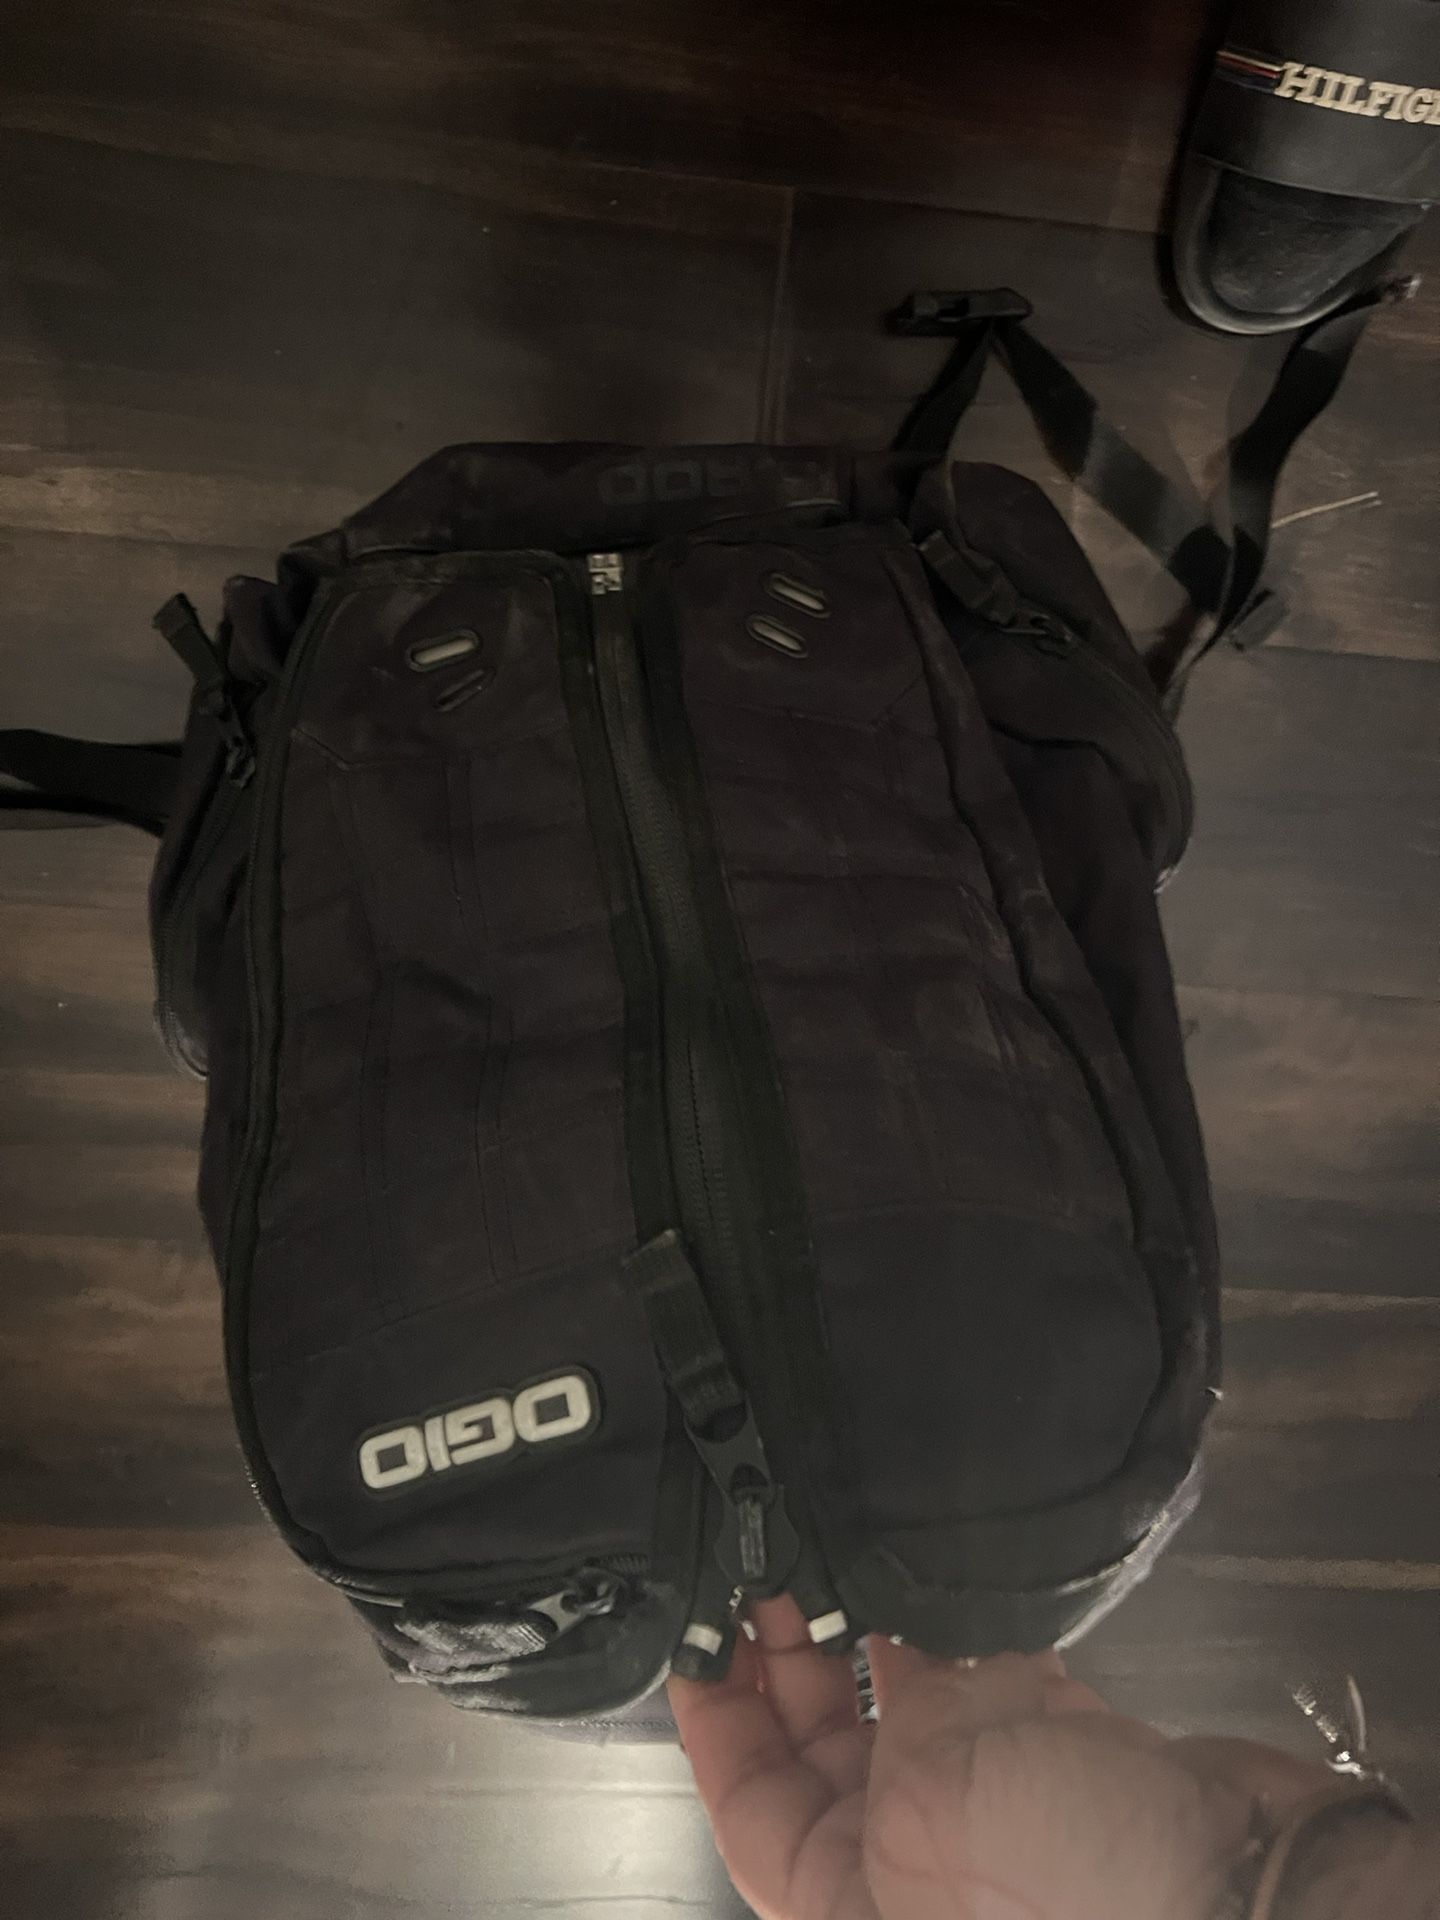 Ogio Skateboard Travel Backpack 